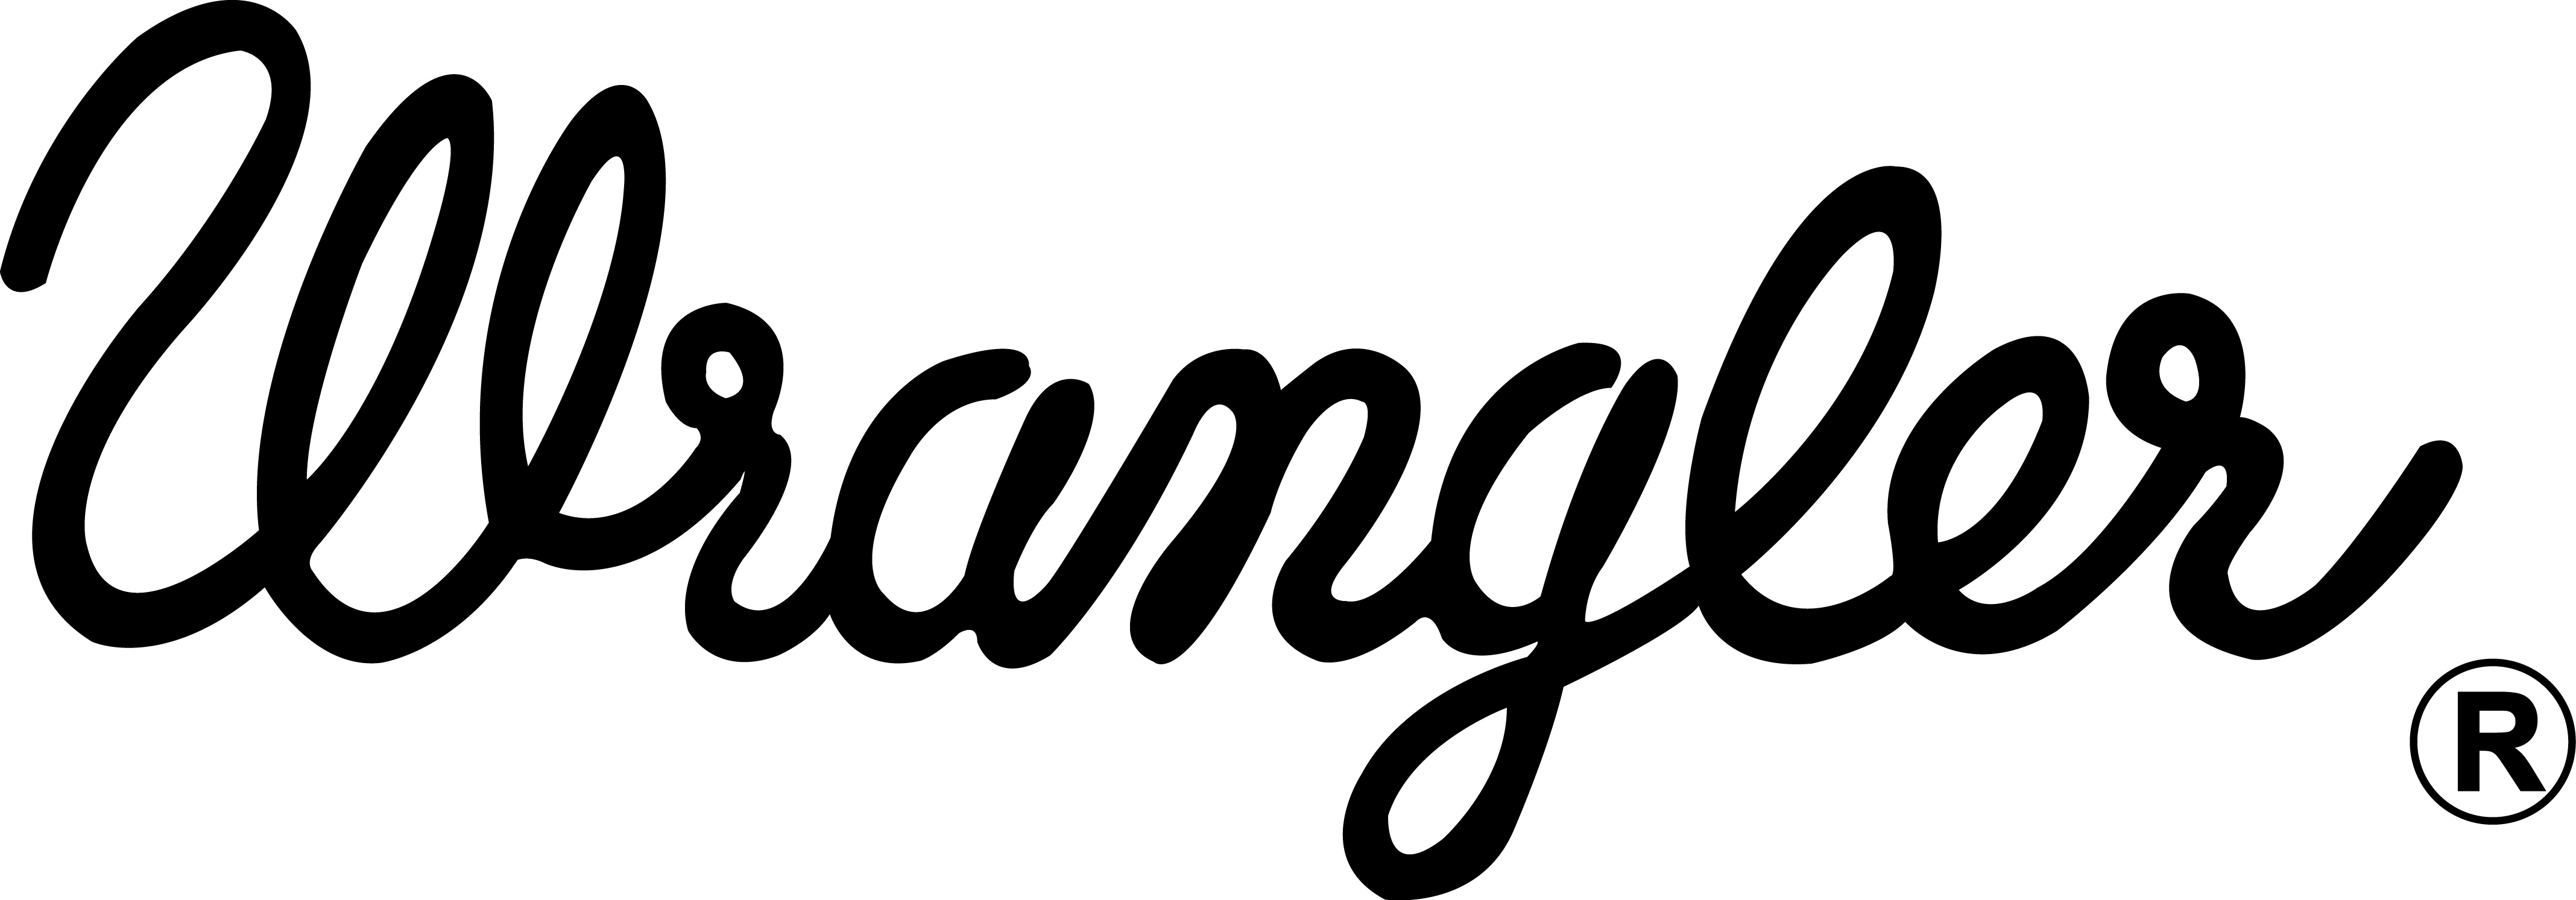 wrangler-rope-logo-latest